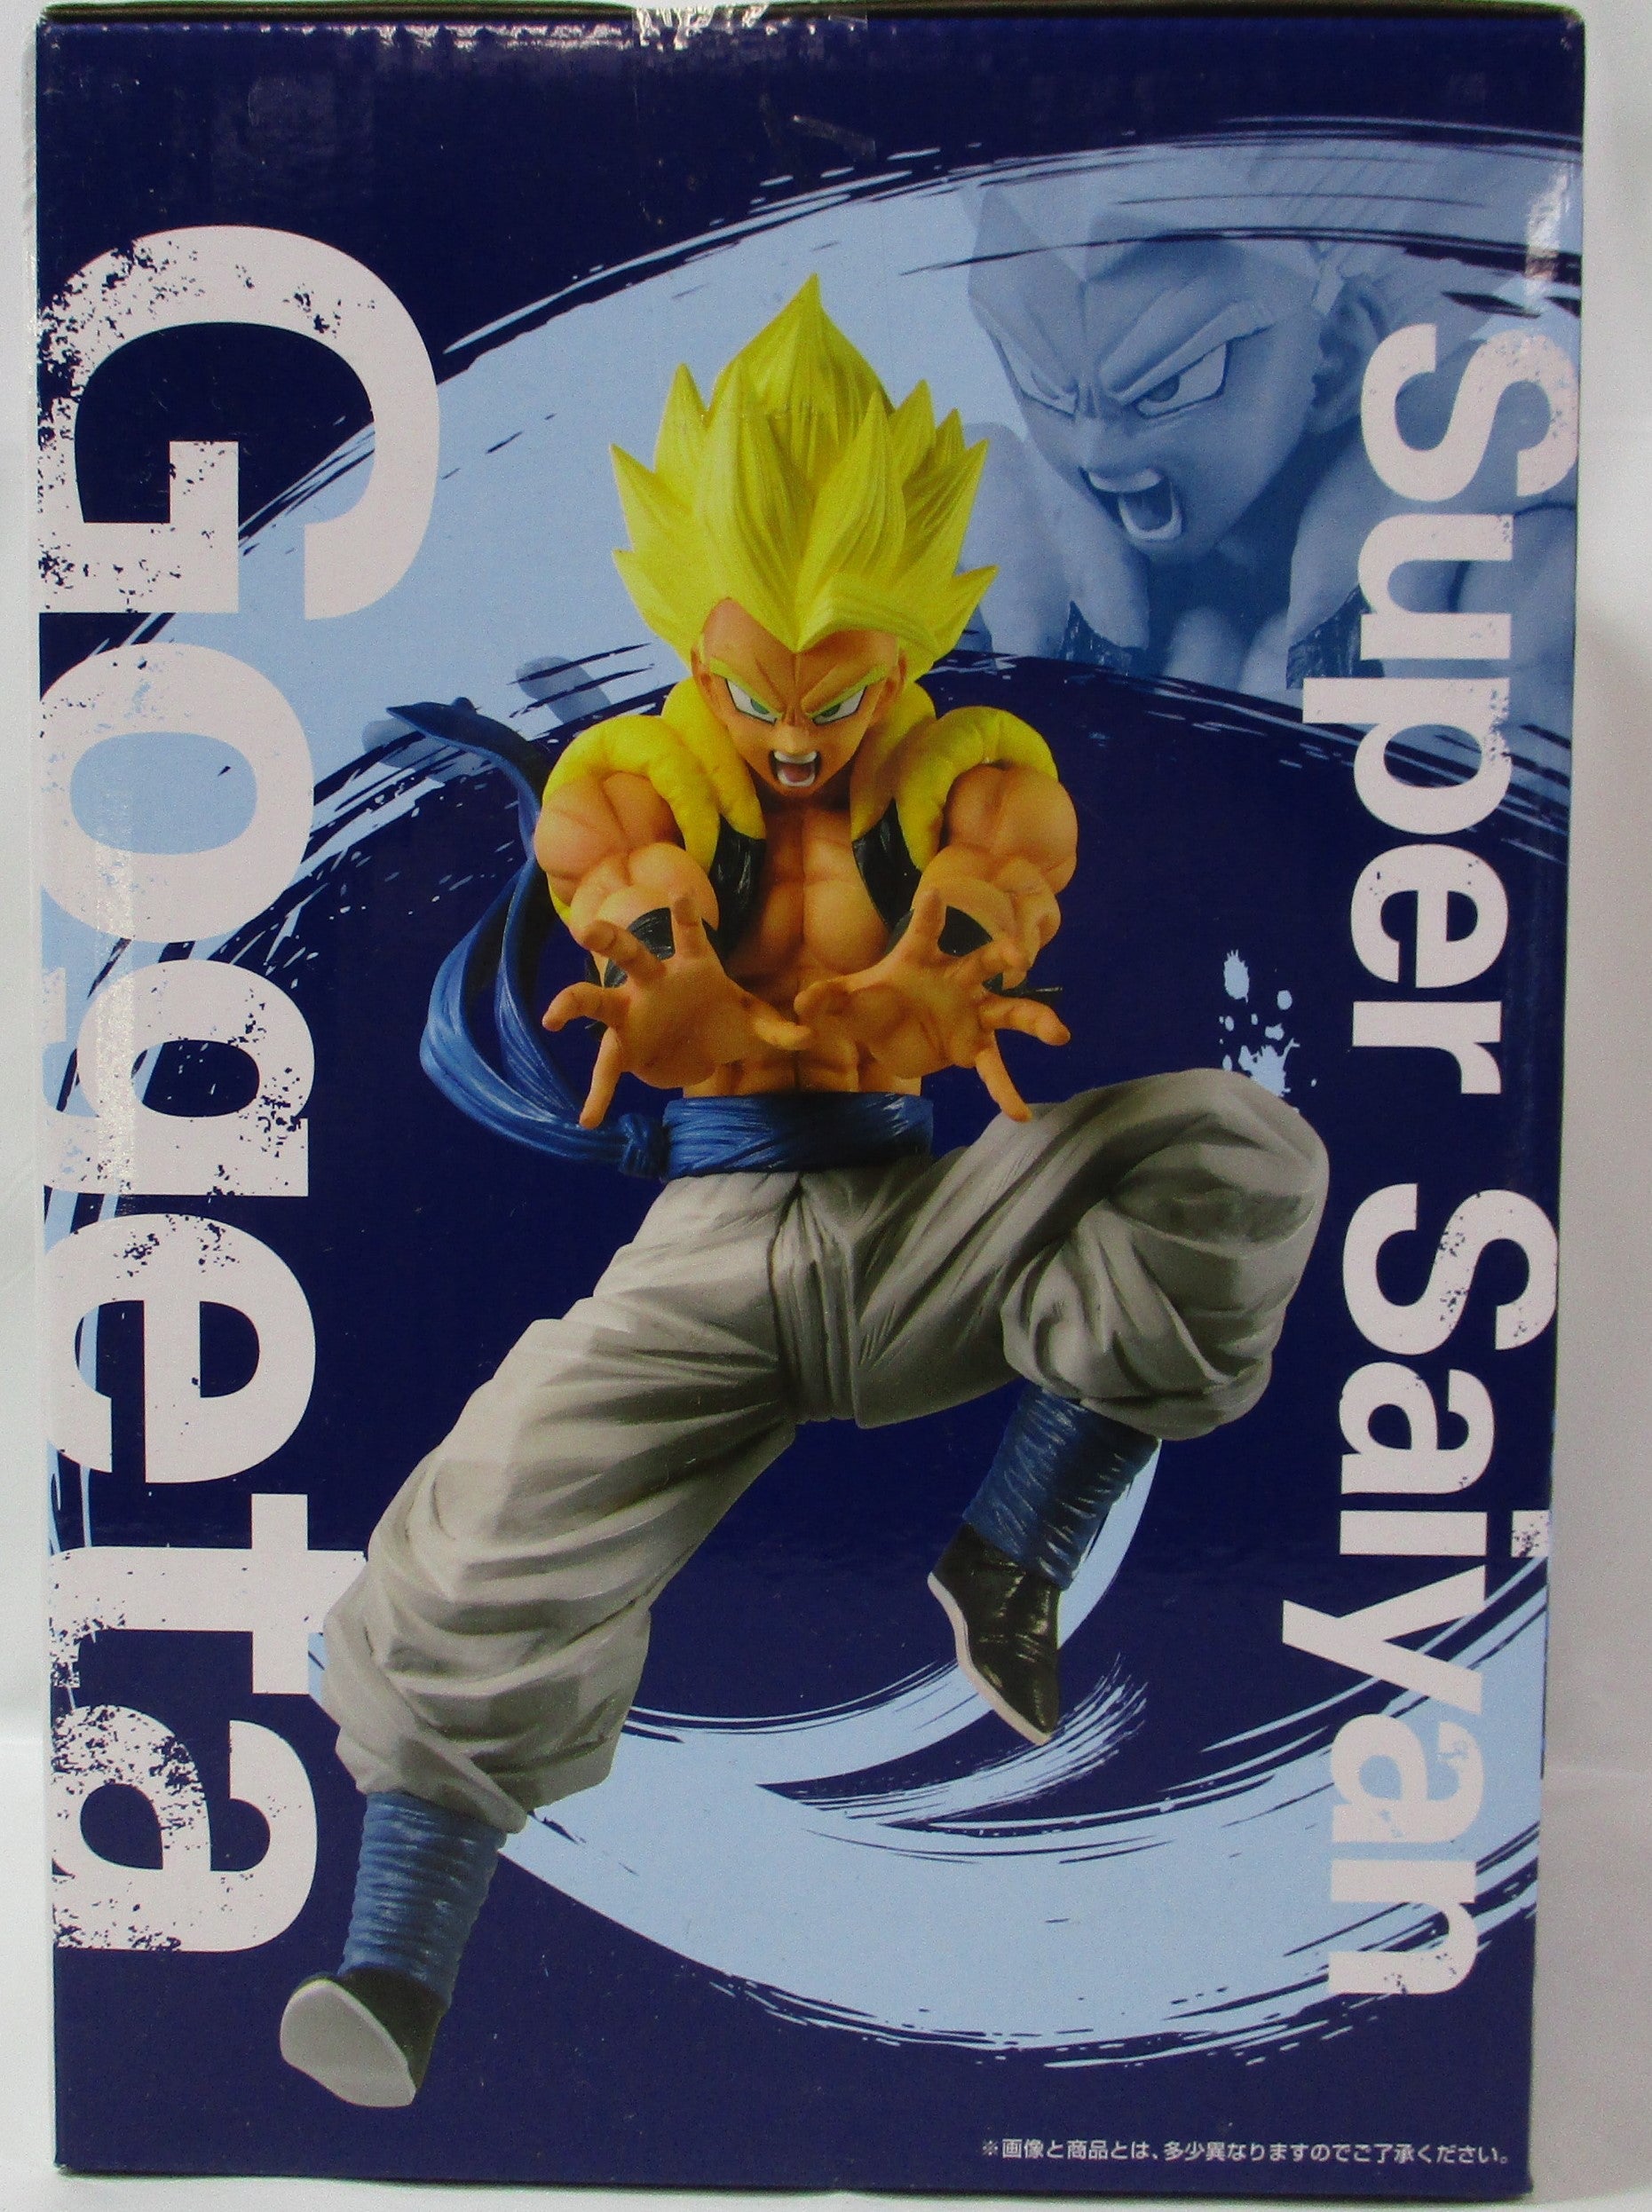 Ichiban Kuji Dragon Ball RITH DRAGONBALL LEGENDS A Award Super Saiyan Gojita Figure 371 | animota